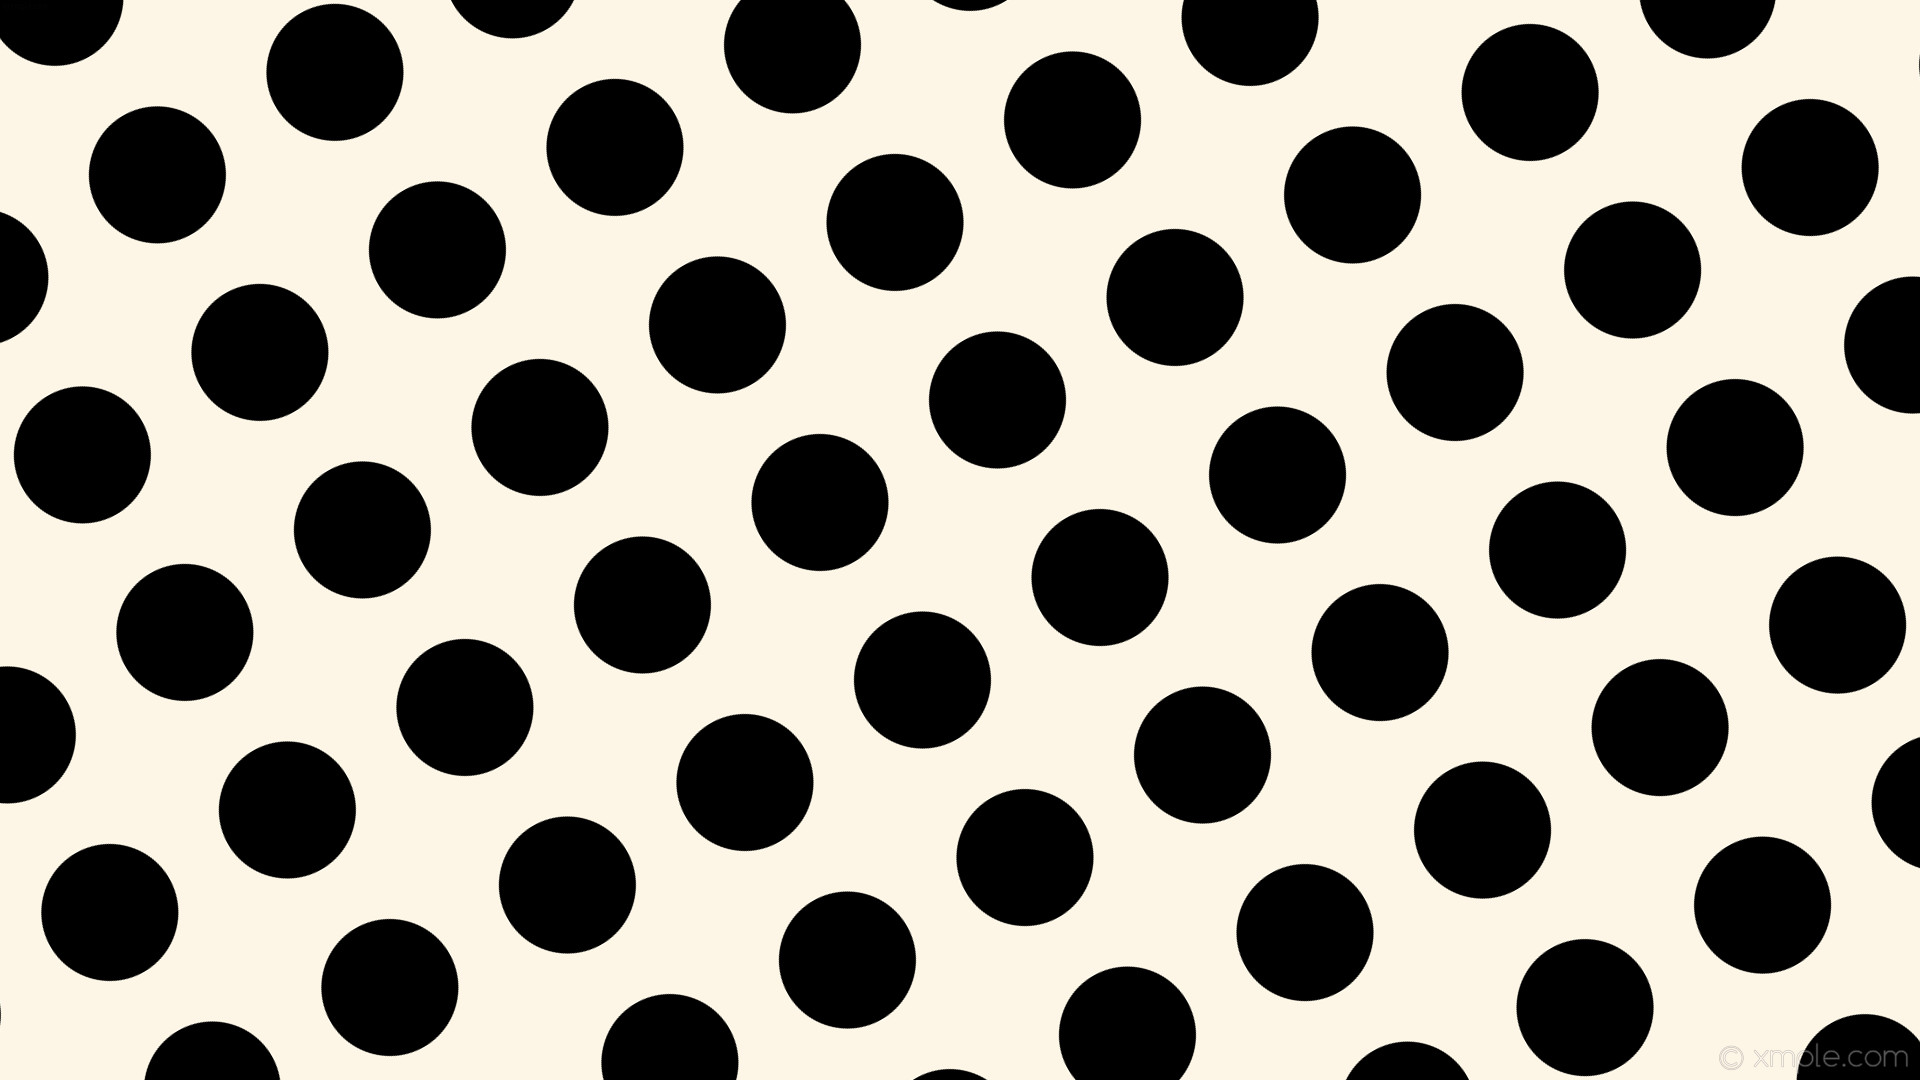 1920x1080 wallpaper white spots black dots polka old lace #fdf5e6 #000000 30Â° 137px  205px